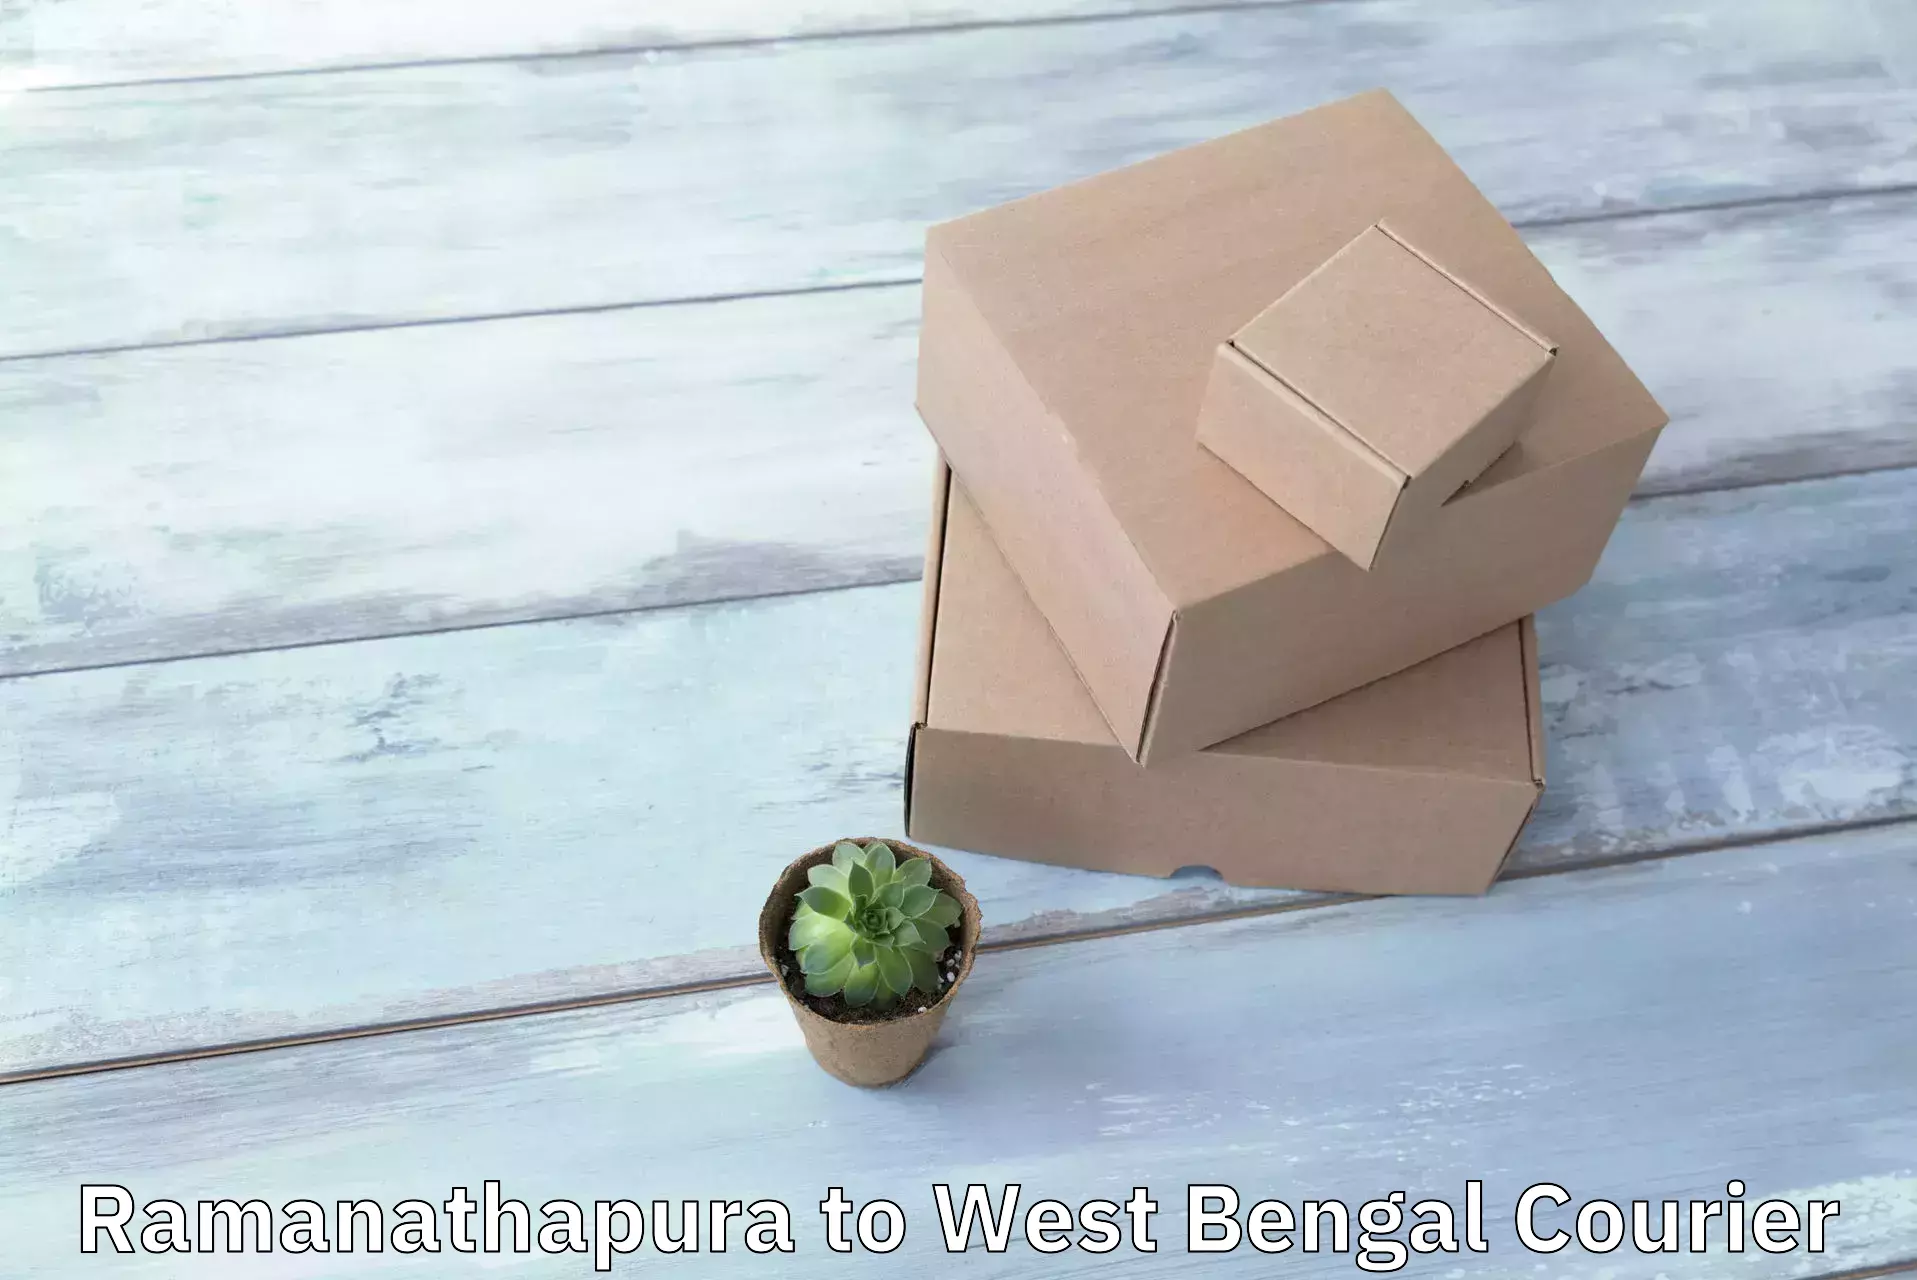 Express logistics Ramanathapura to West Bengal